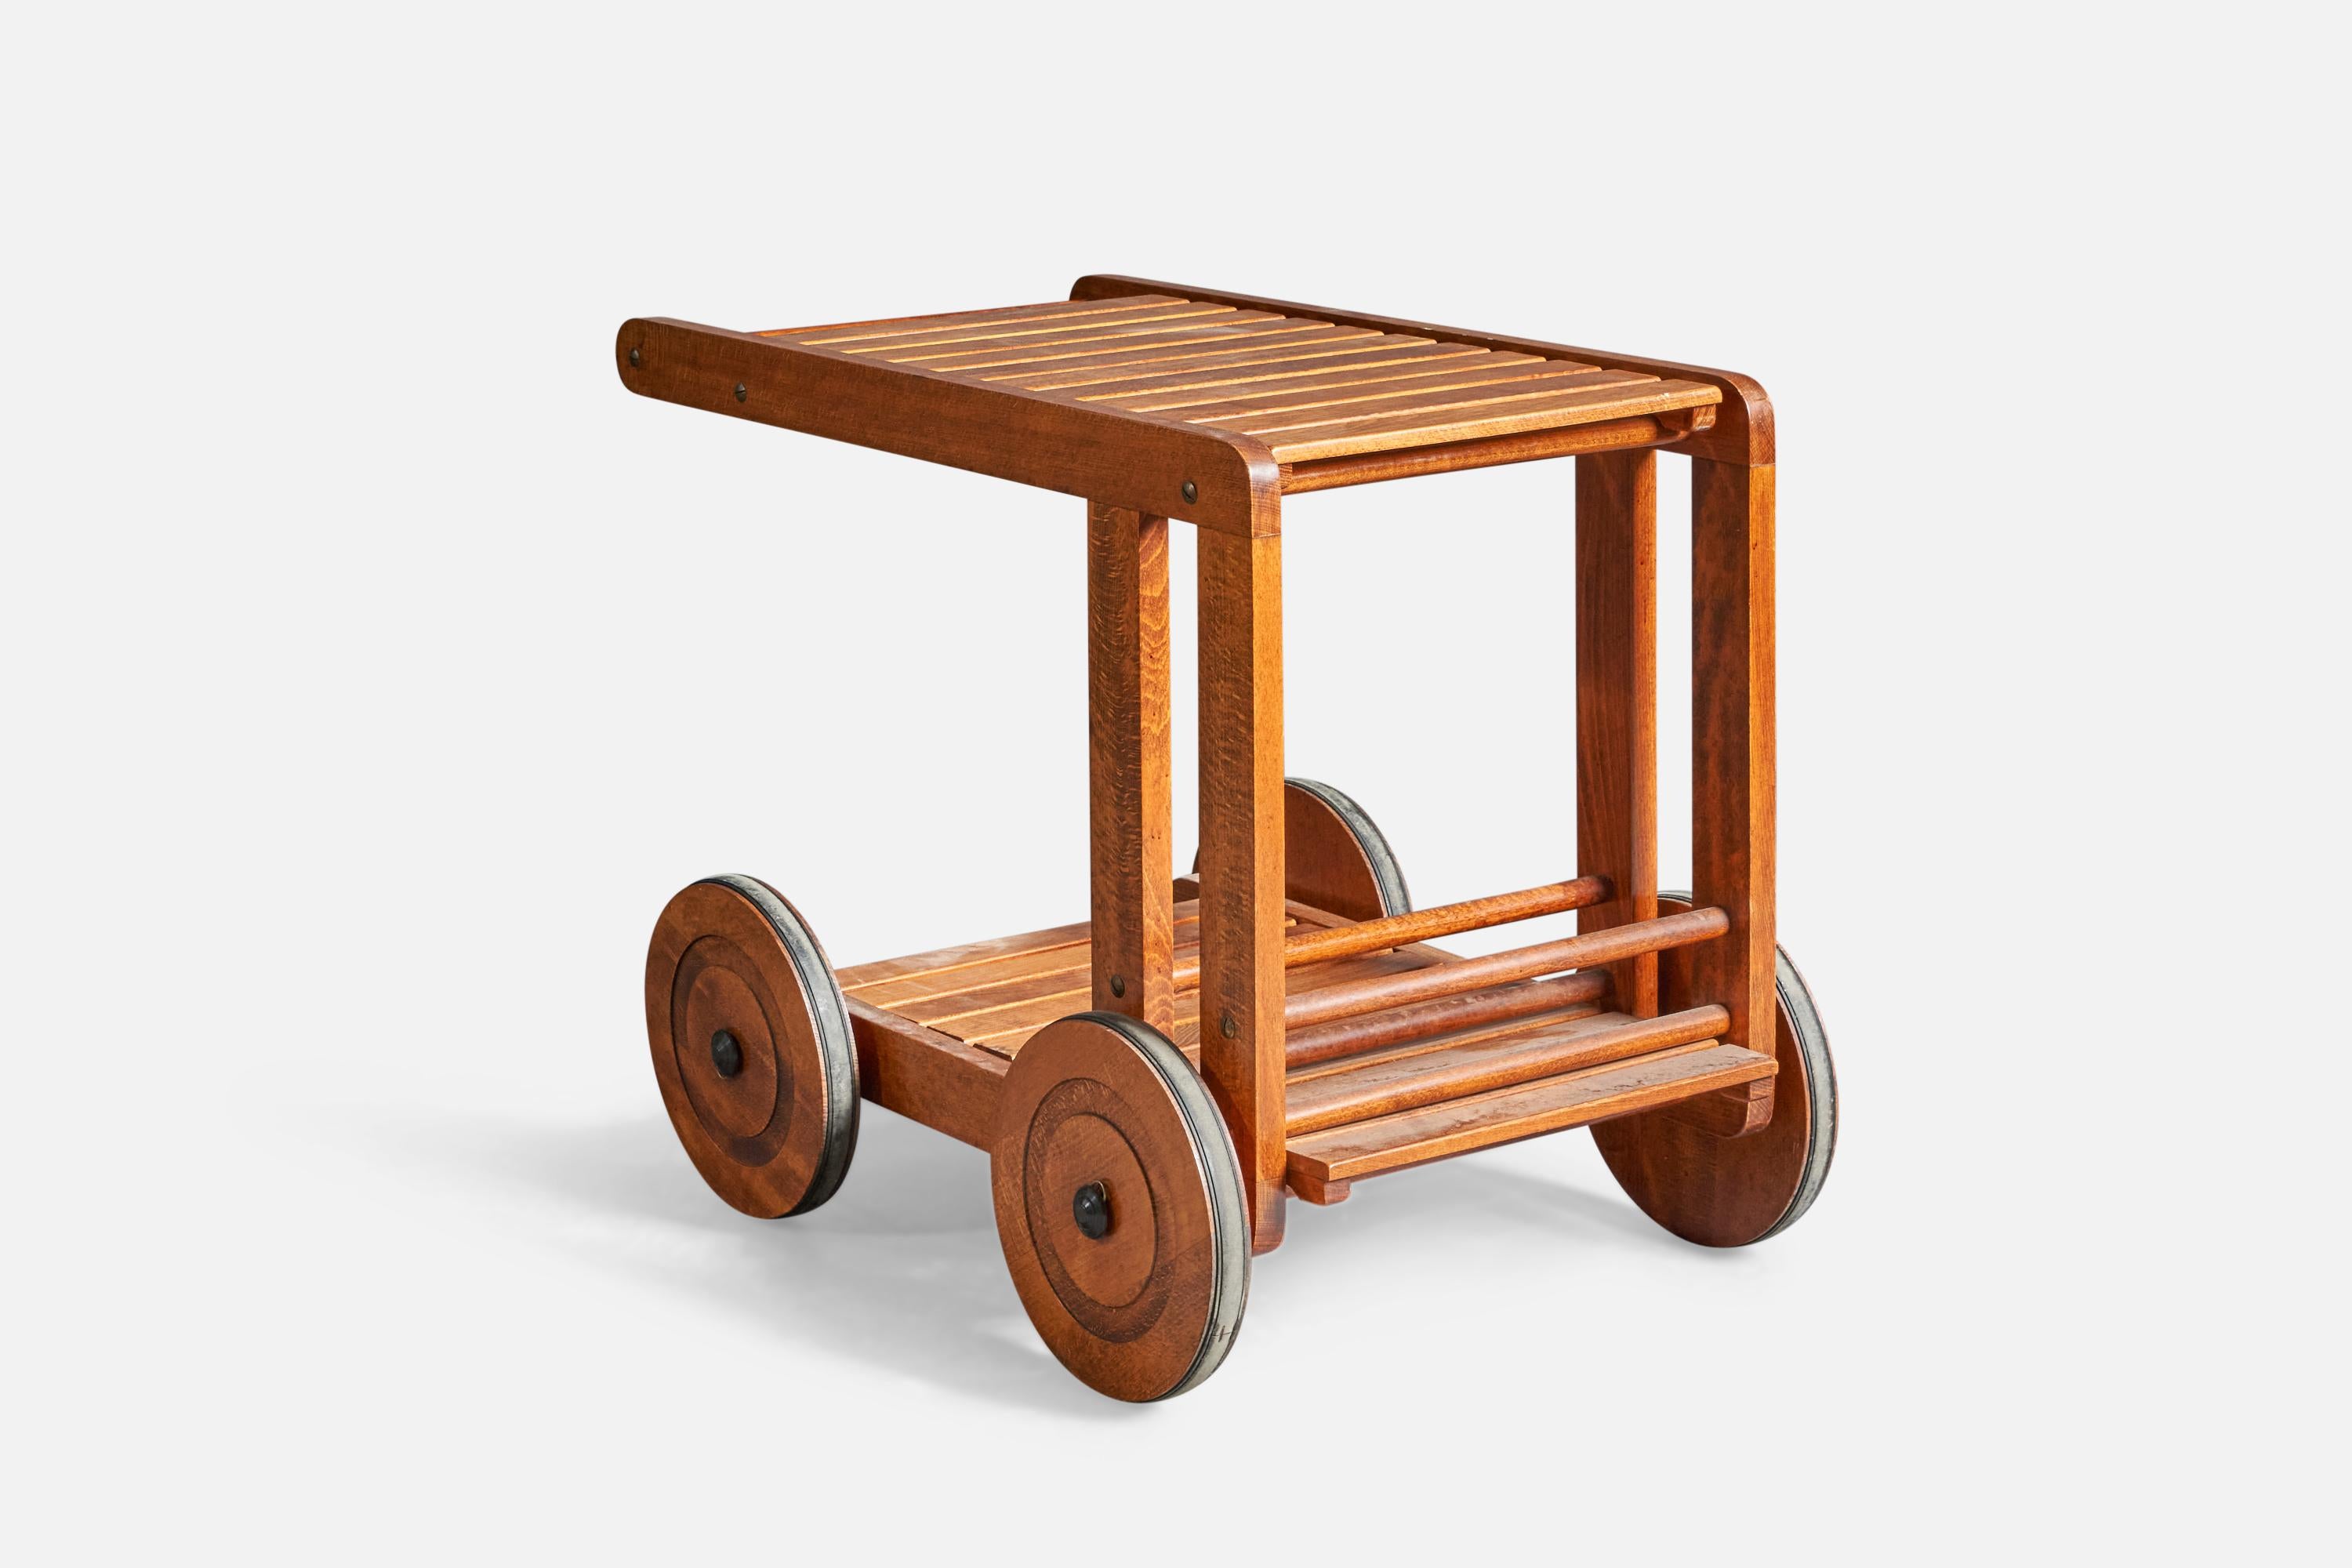 Chariot de bar ou chariot à boissons en bois et métal, conçu et produit en Suède, C.C.